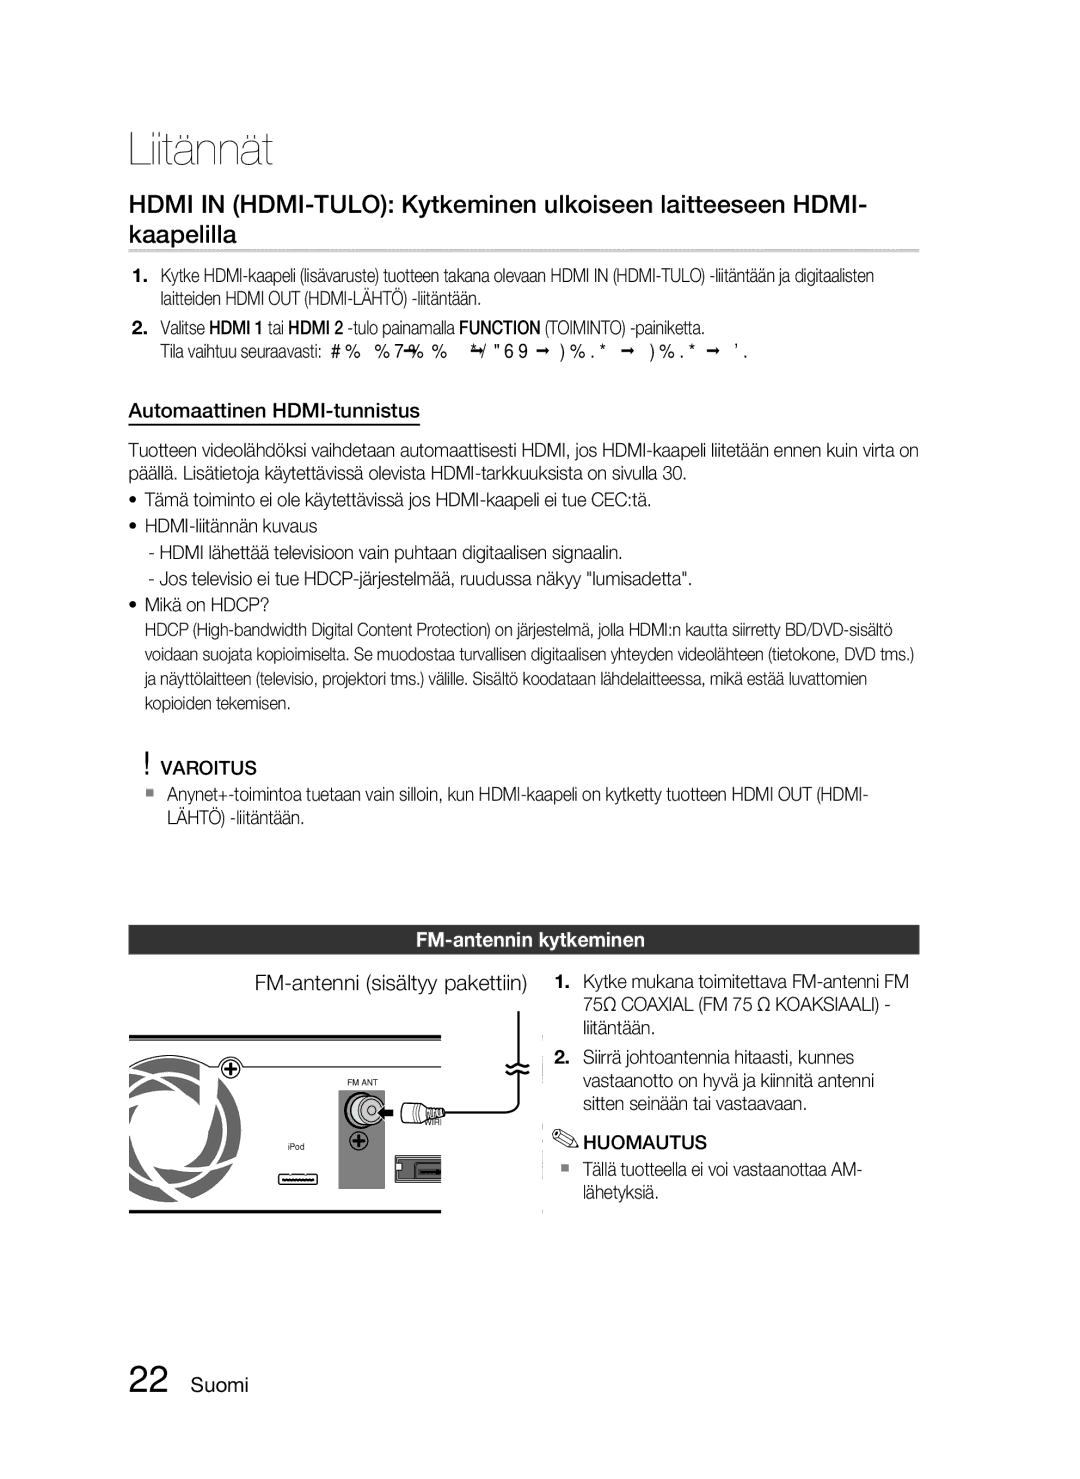 Samsung HT-C6500/XEE manual Automaattinen HDMI-tunnistus, FM-antennin kytkeminen, FM-antenni sisältyy pakettiin 